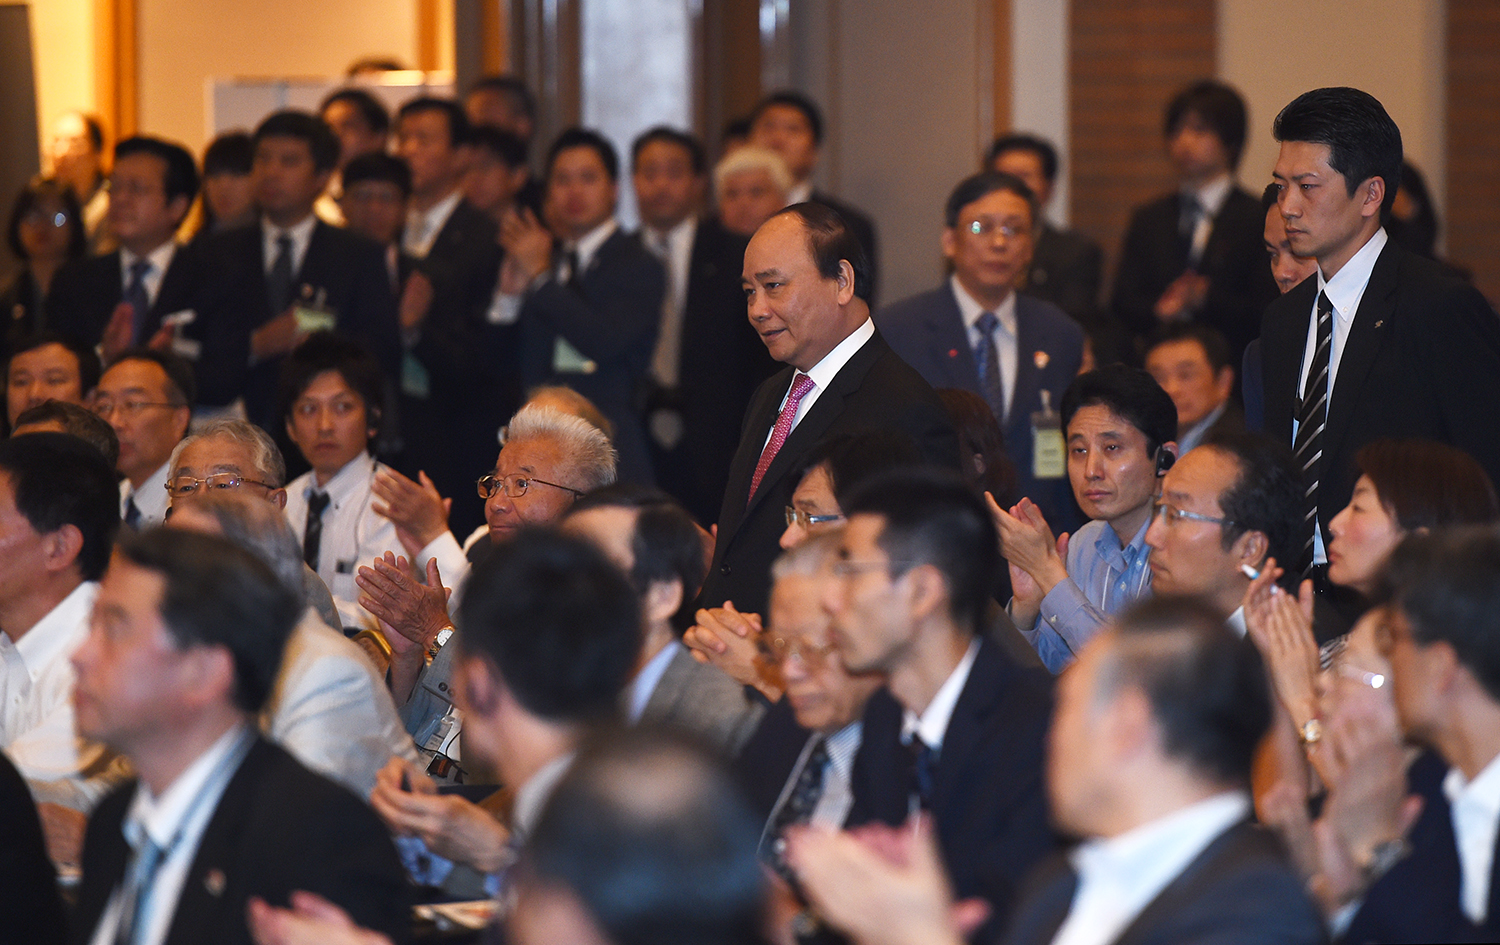 Thủ tướng Nguyễn Xuân Phúc đã dự và phát biểu tại phiên khai mạc Hội nghị Tương lai châu Á lần thứ 23.